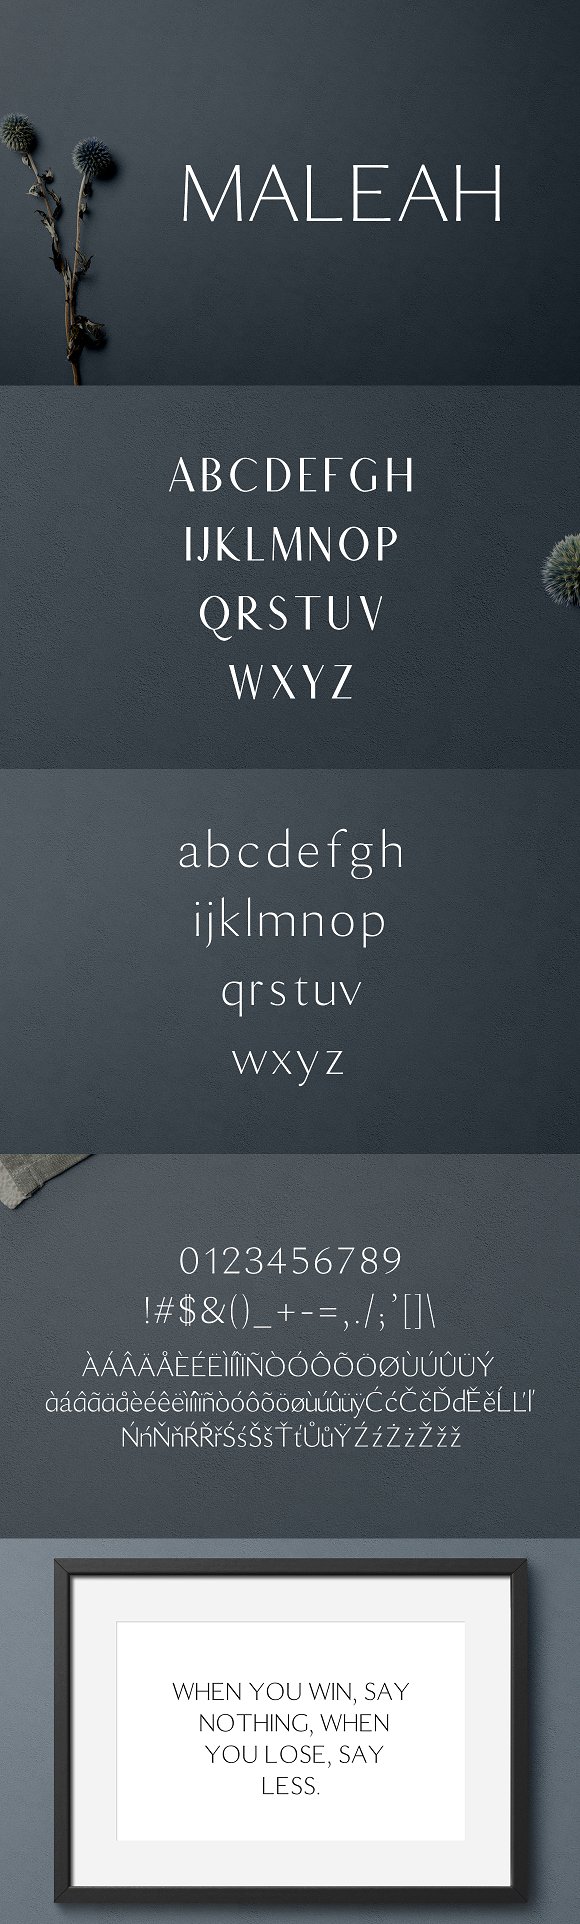 一款优雅的现代无衬线字体 Maleah Sans Serif 2 Font Family Pack插图